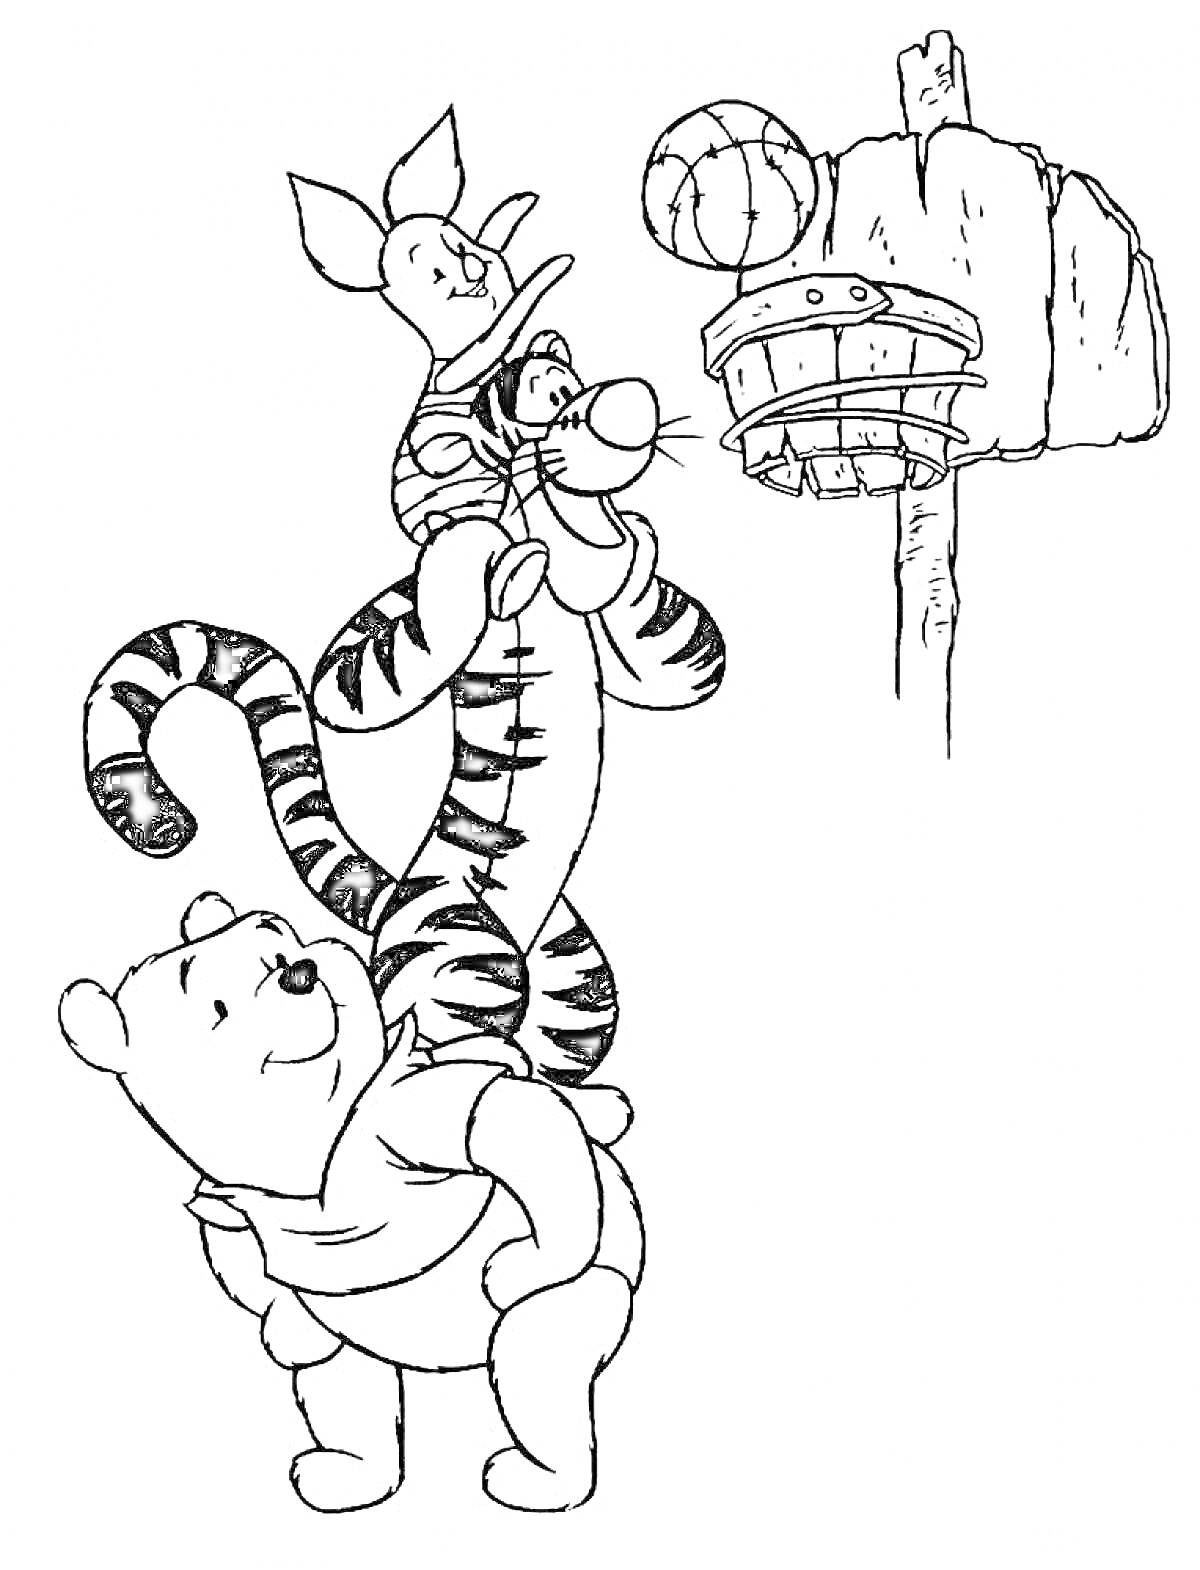 Медвежонок, тигр и поросёнок играют в баскетбол, мяч летит в кольцо, установленное на столбе